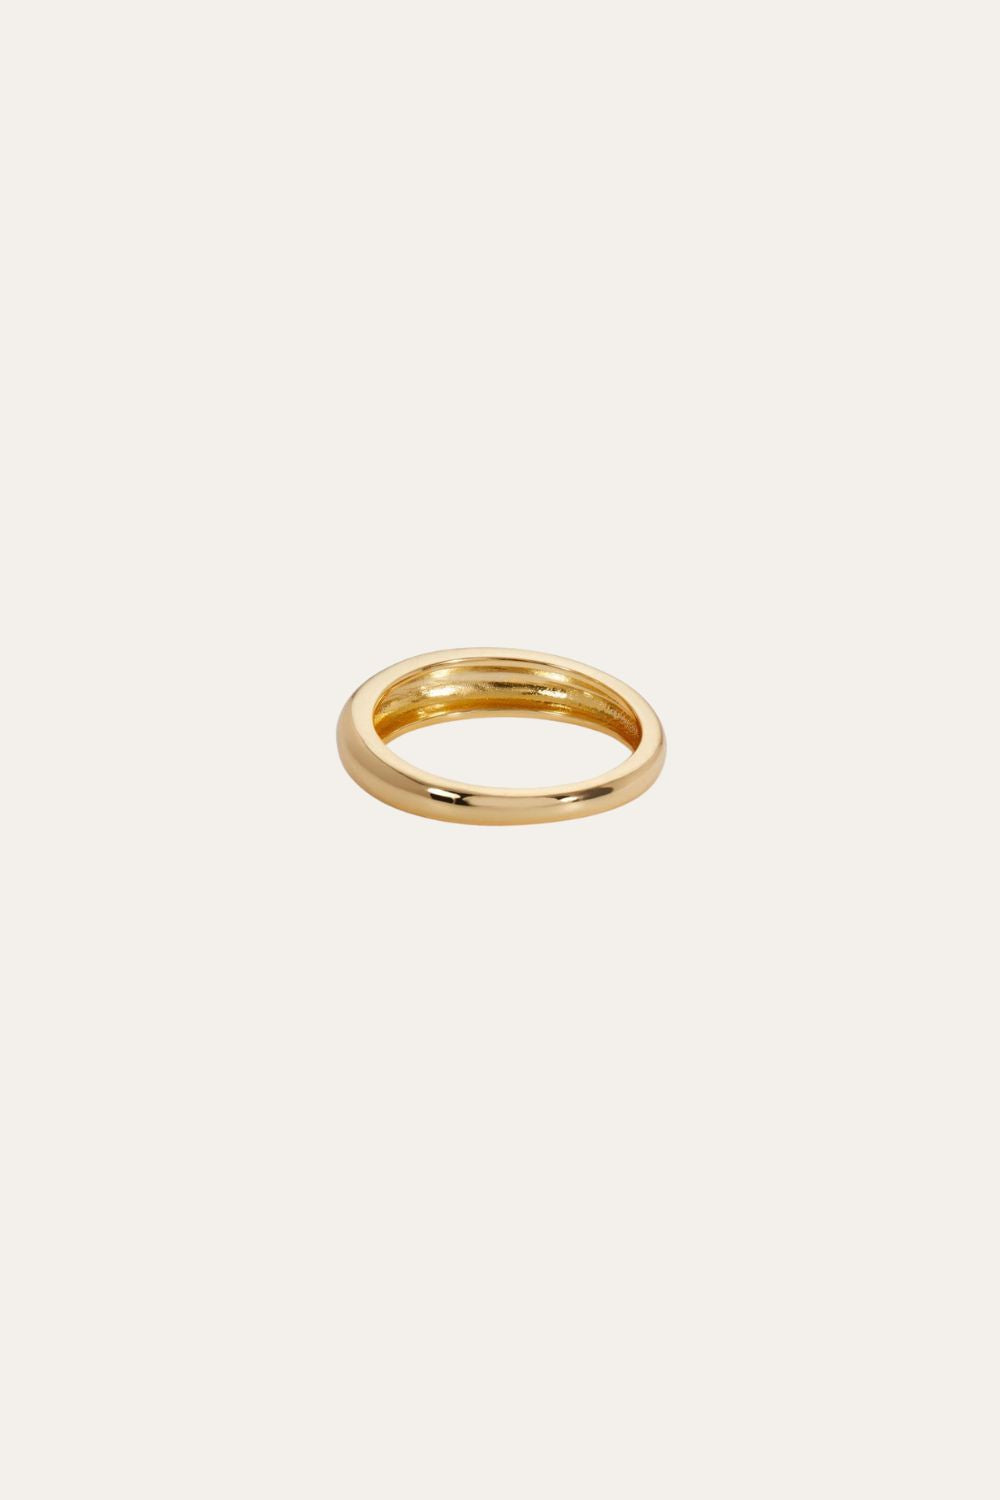 Lara band gold vermeil ring